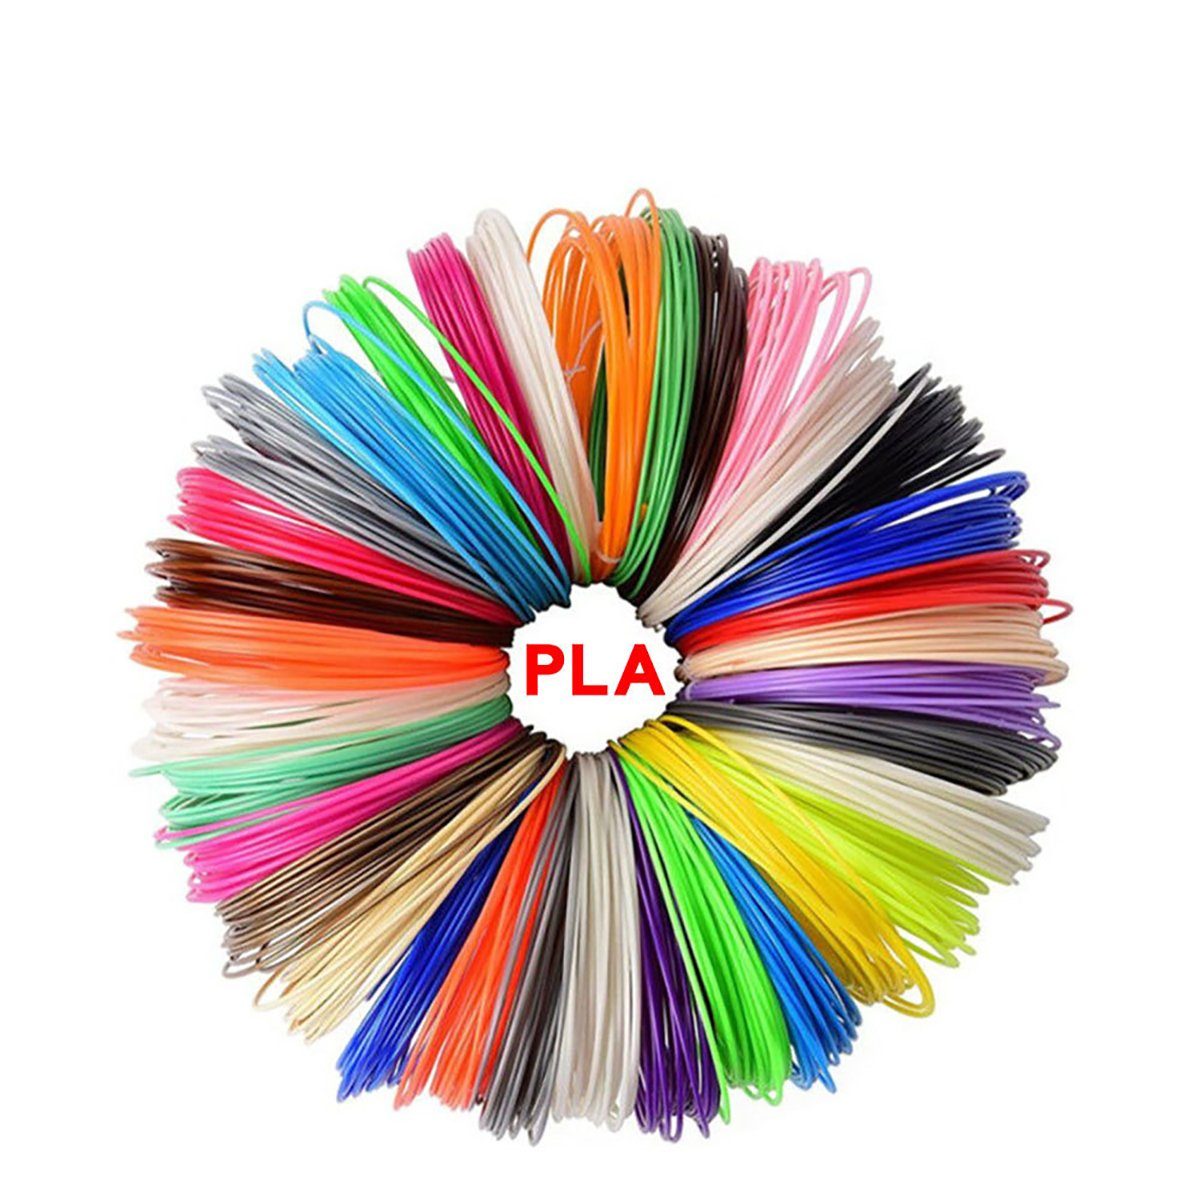 TPFNet 3D-Drucker-Stift PLA-Filament Set für 3D Drucker Stift - 3D-Malerei, Kinderspielzeug - Farb PLA Filament 15m (5M x 3 zufällige Farben)